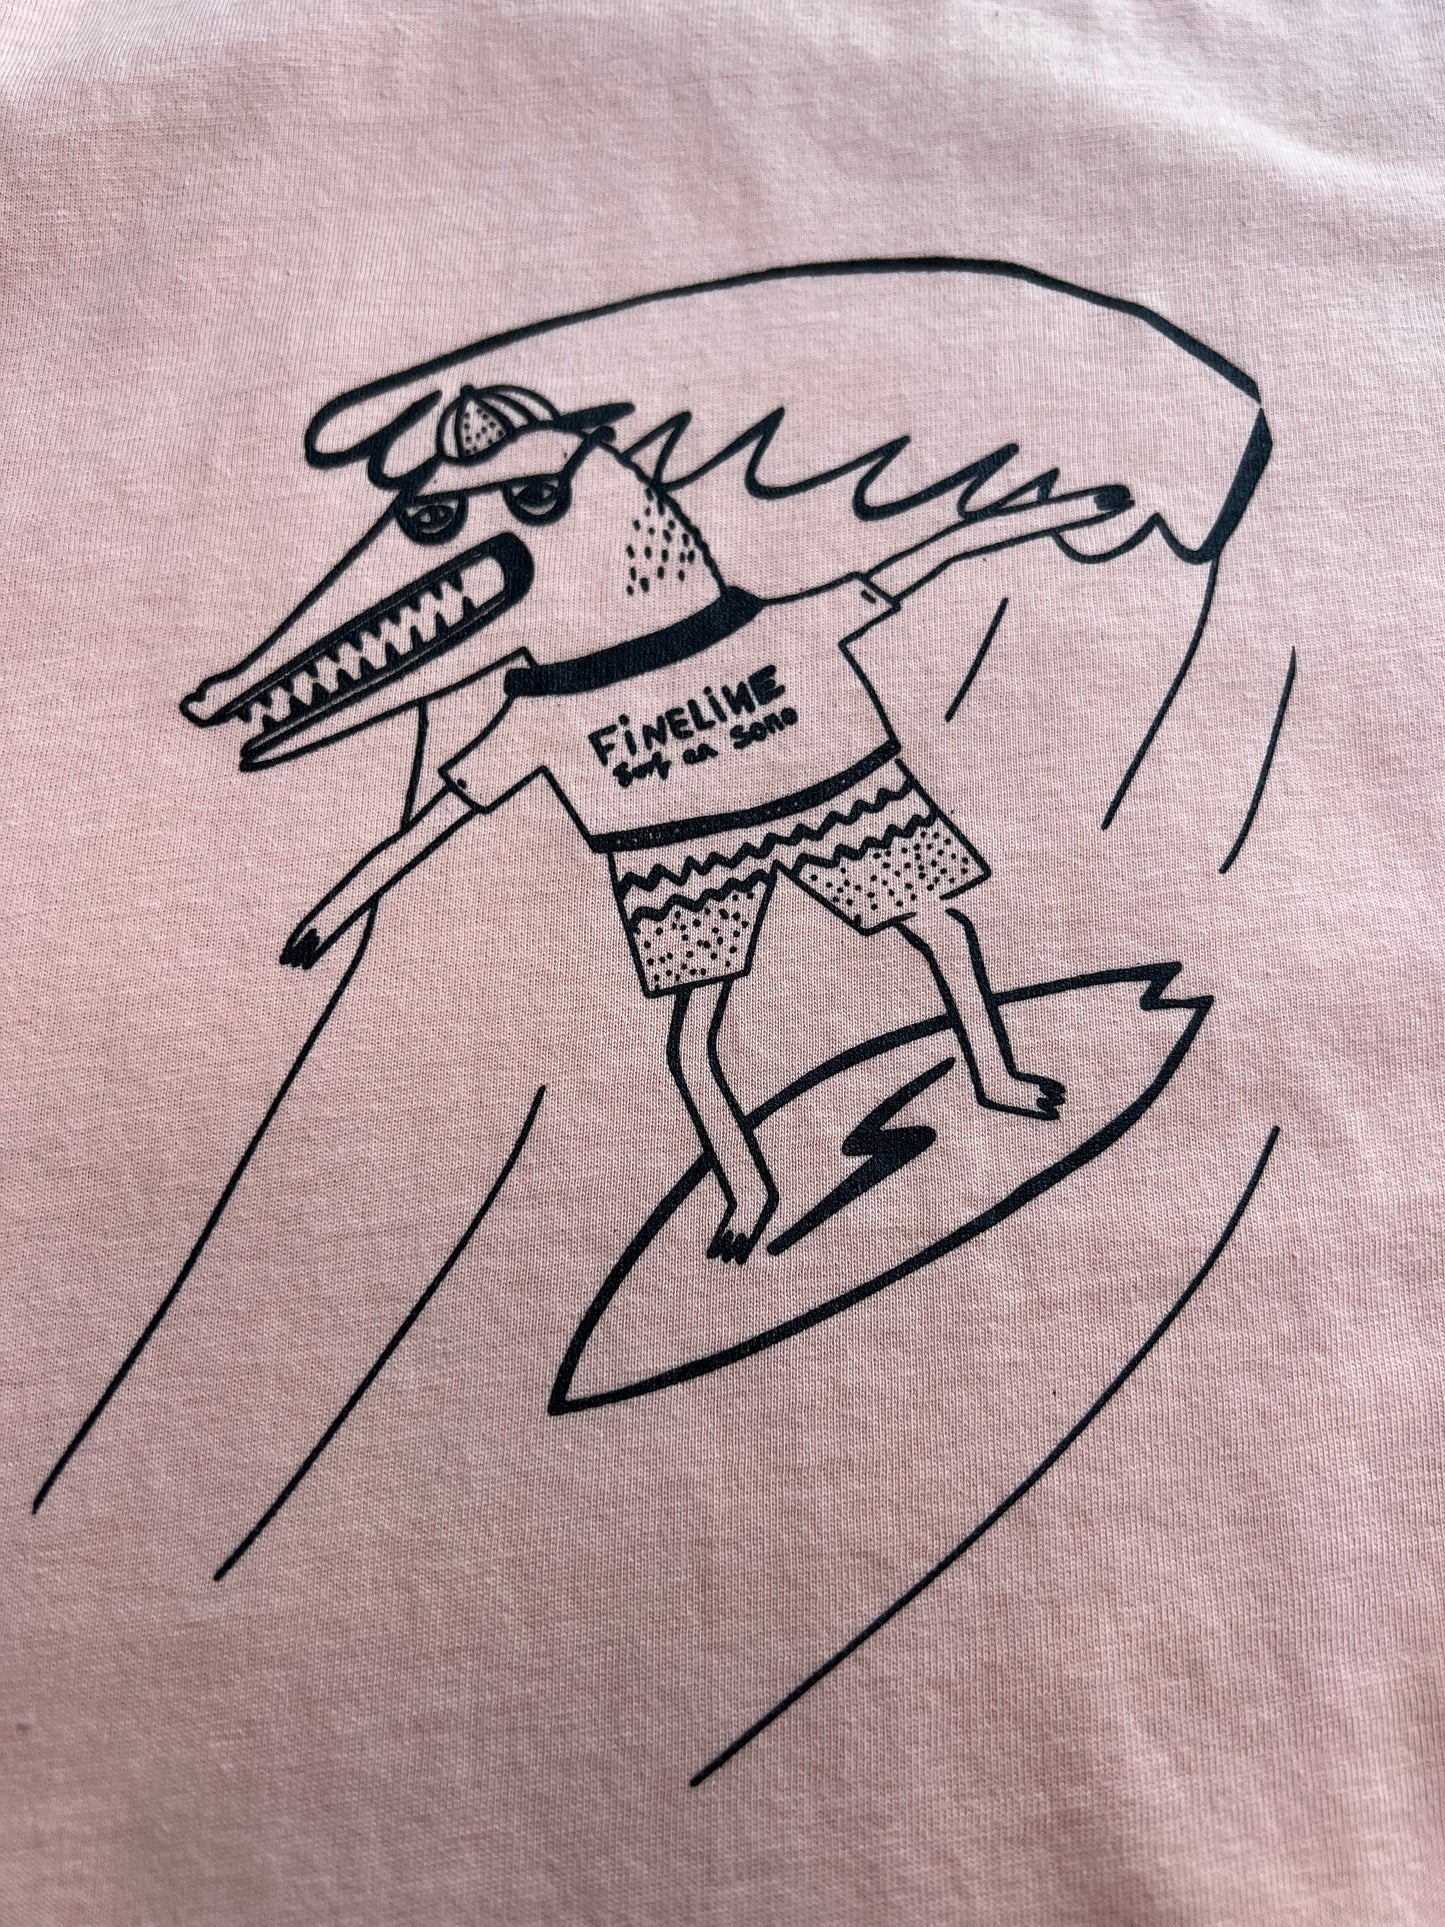 Croco Surfer camiseta melocotón.